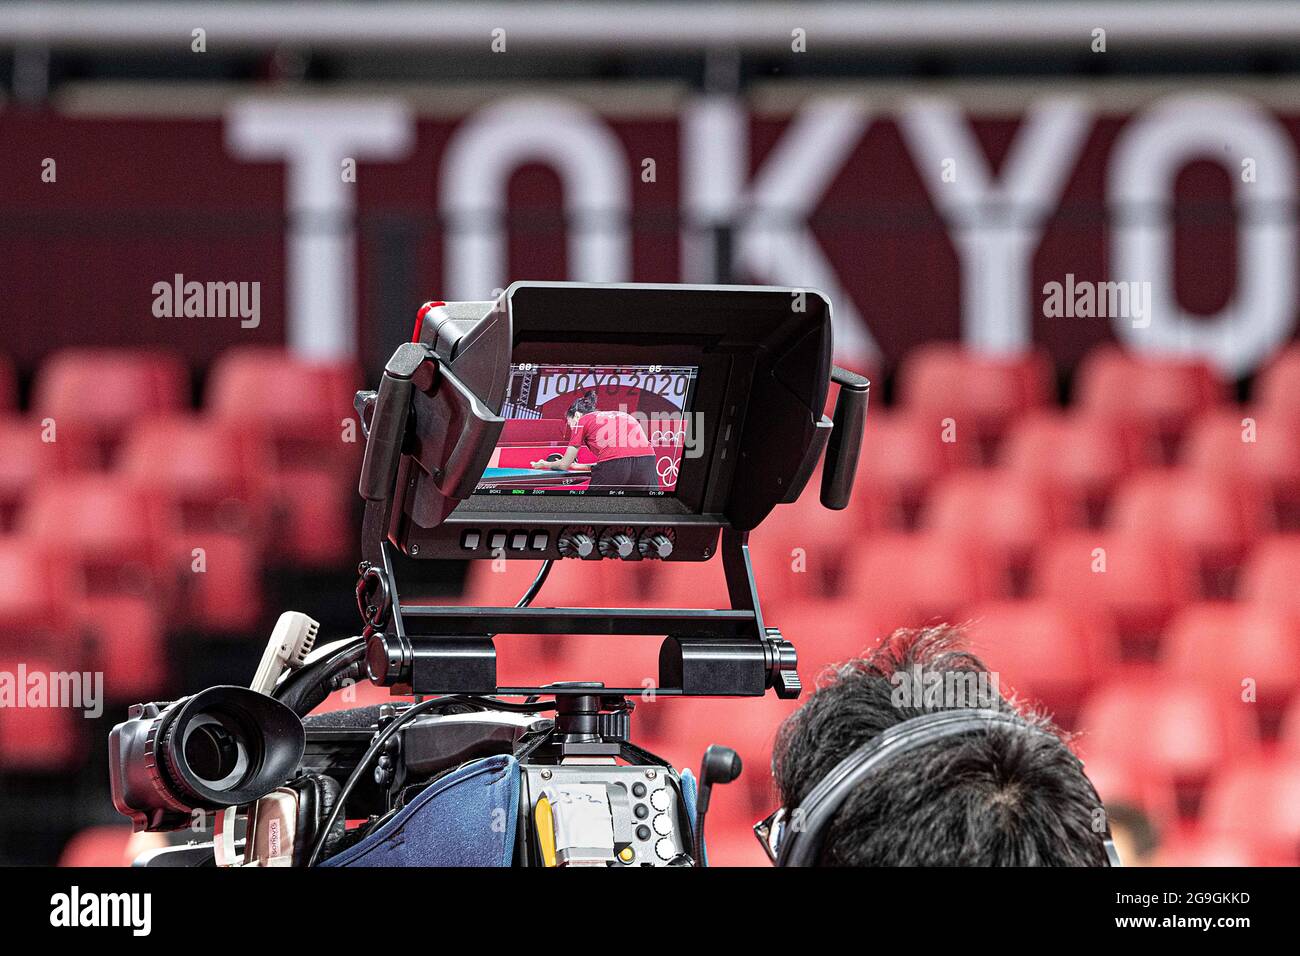 'Olimpiadi della televisione'; registrato nella sala da ping pong; ping pong, single, uomini il 26 luglio 2021; Olimpiadi estive 2020, dal 23.07. - 08.08.2021 a Tokyo/Giappone. Foto Stock